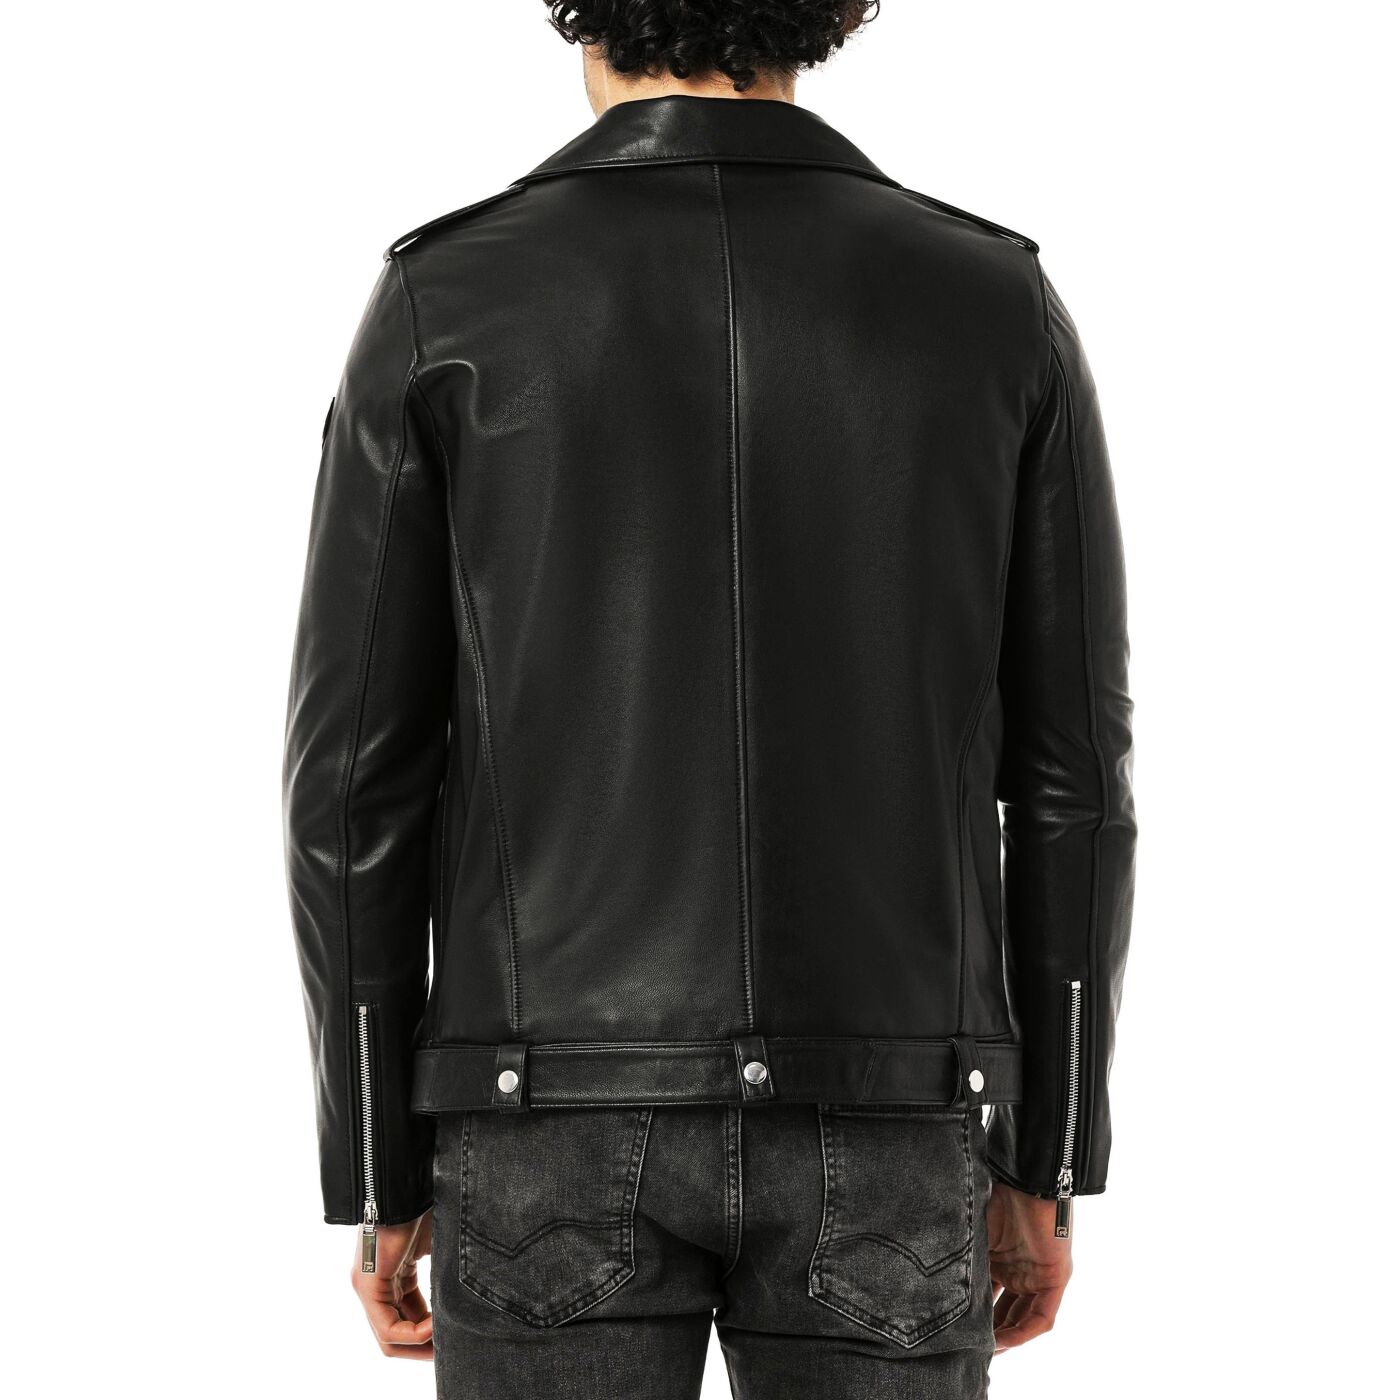 Fashion Genuine Leather Jacket Stylish Biker Black Red Leather Faux Leather - roblox biker jacket white